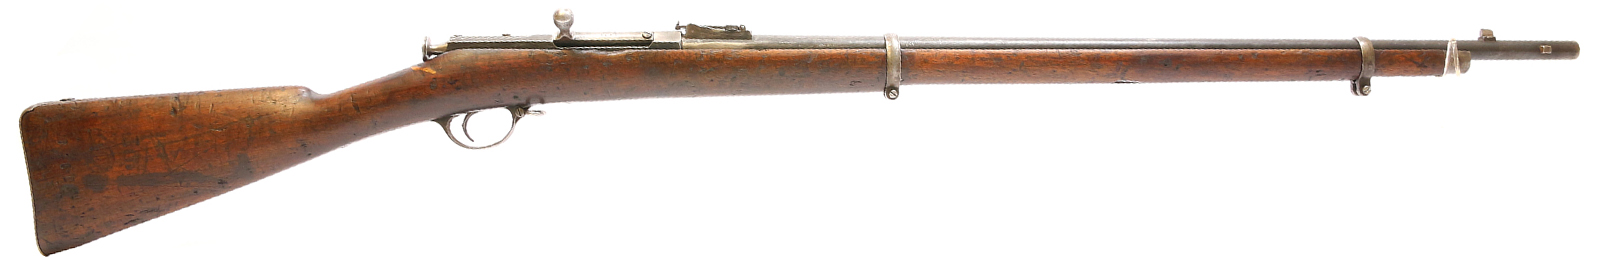 Second Model M1870 Berdan Rifle .42 Berdan